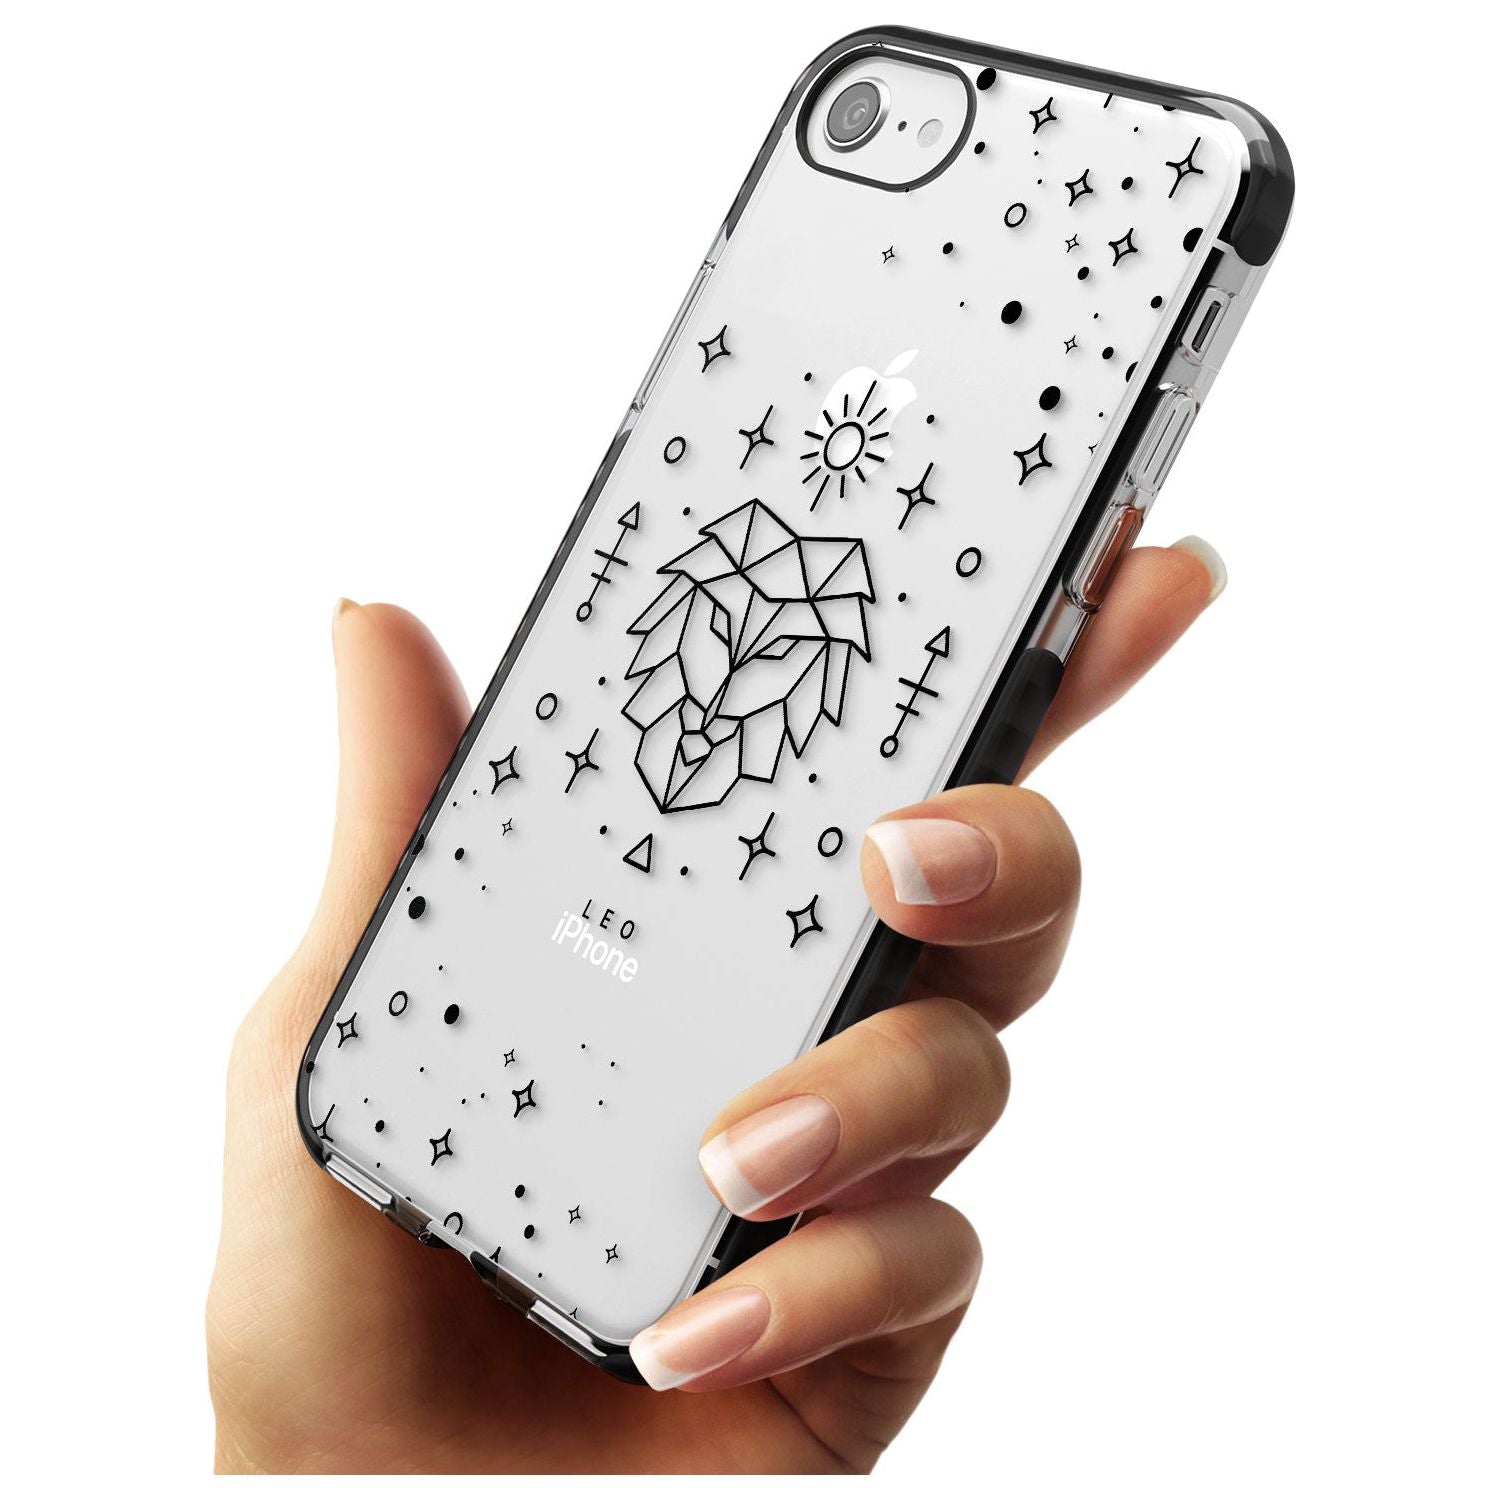 Leo Emblem - Transparent Design Black Impact Phone Case for iPhone SE 8 7 Plus